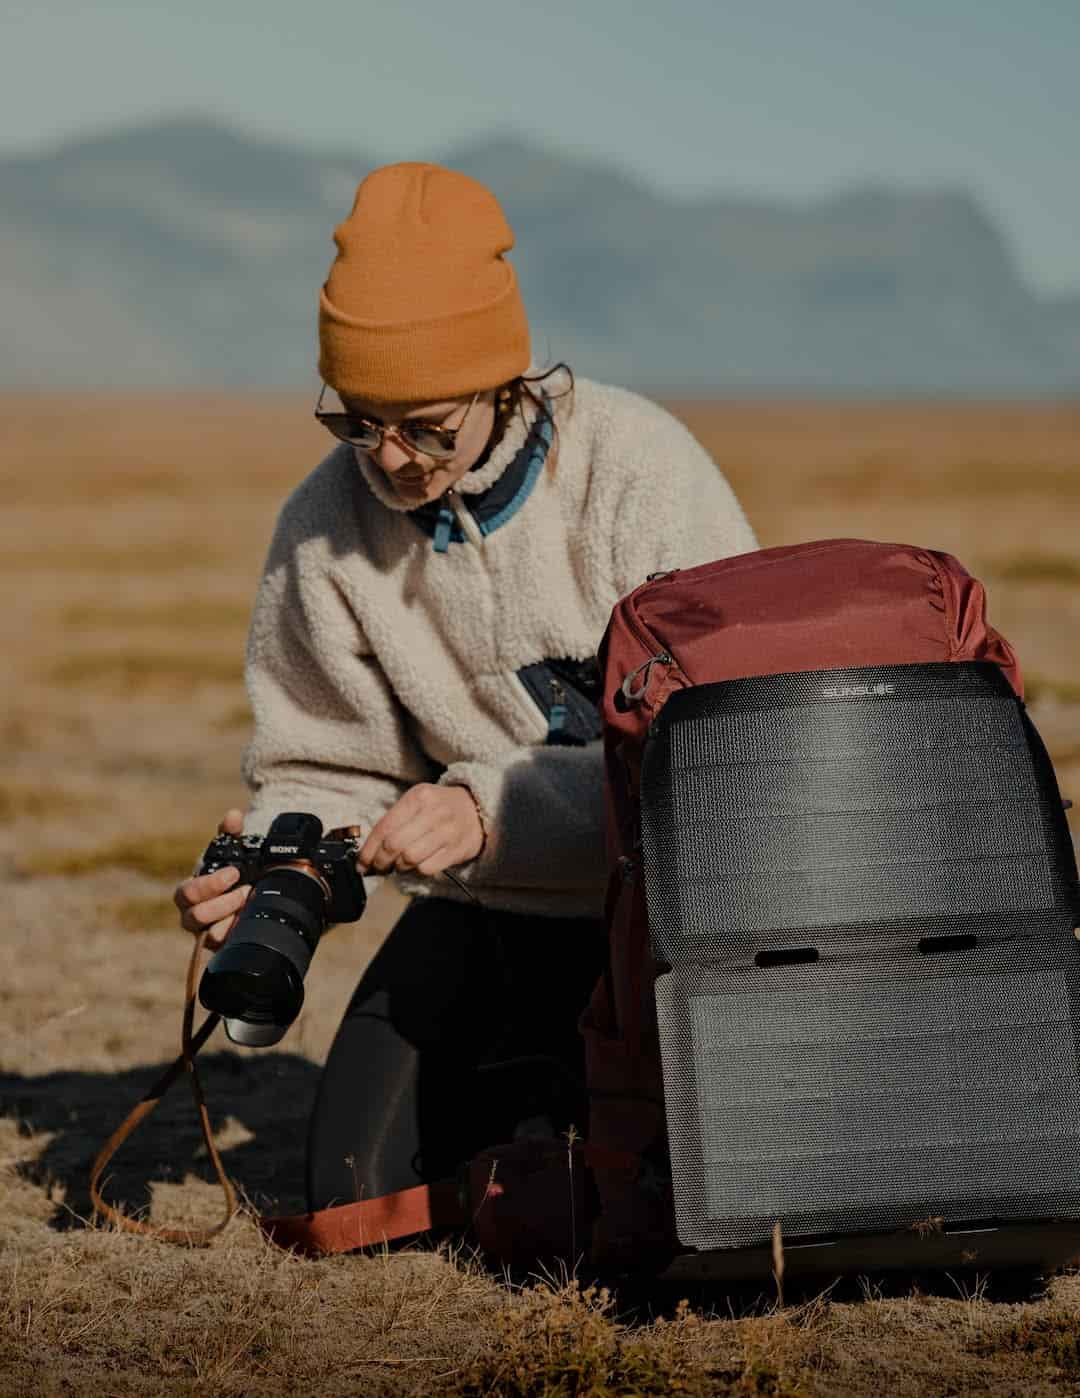 femme sur le point de prendre une photo avec un panneau solaire de randonnée attaché à son sac à dos sur le sol